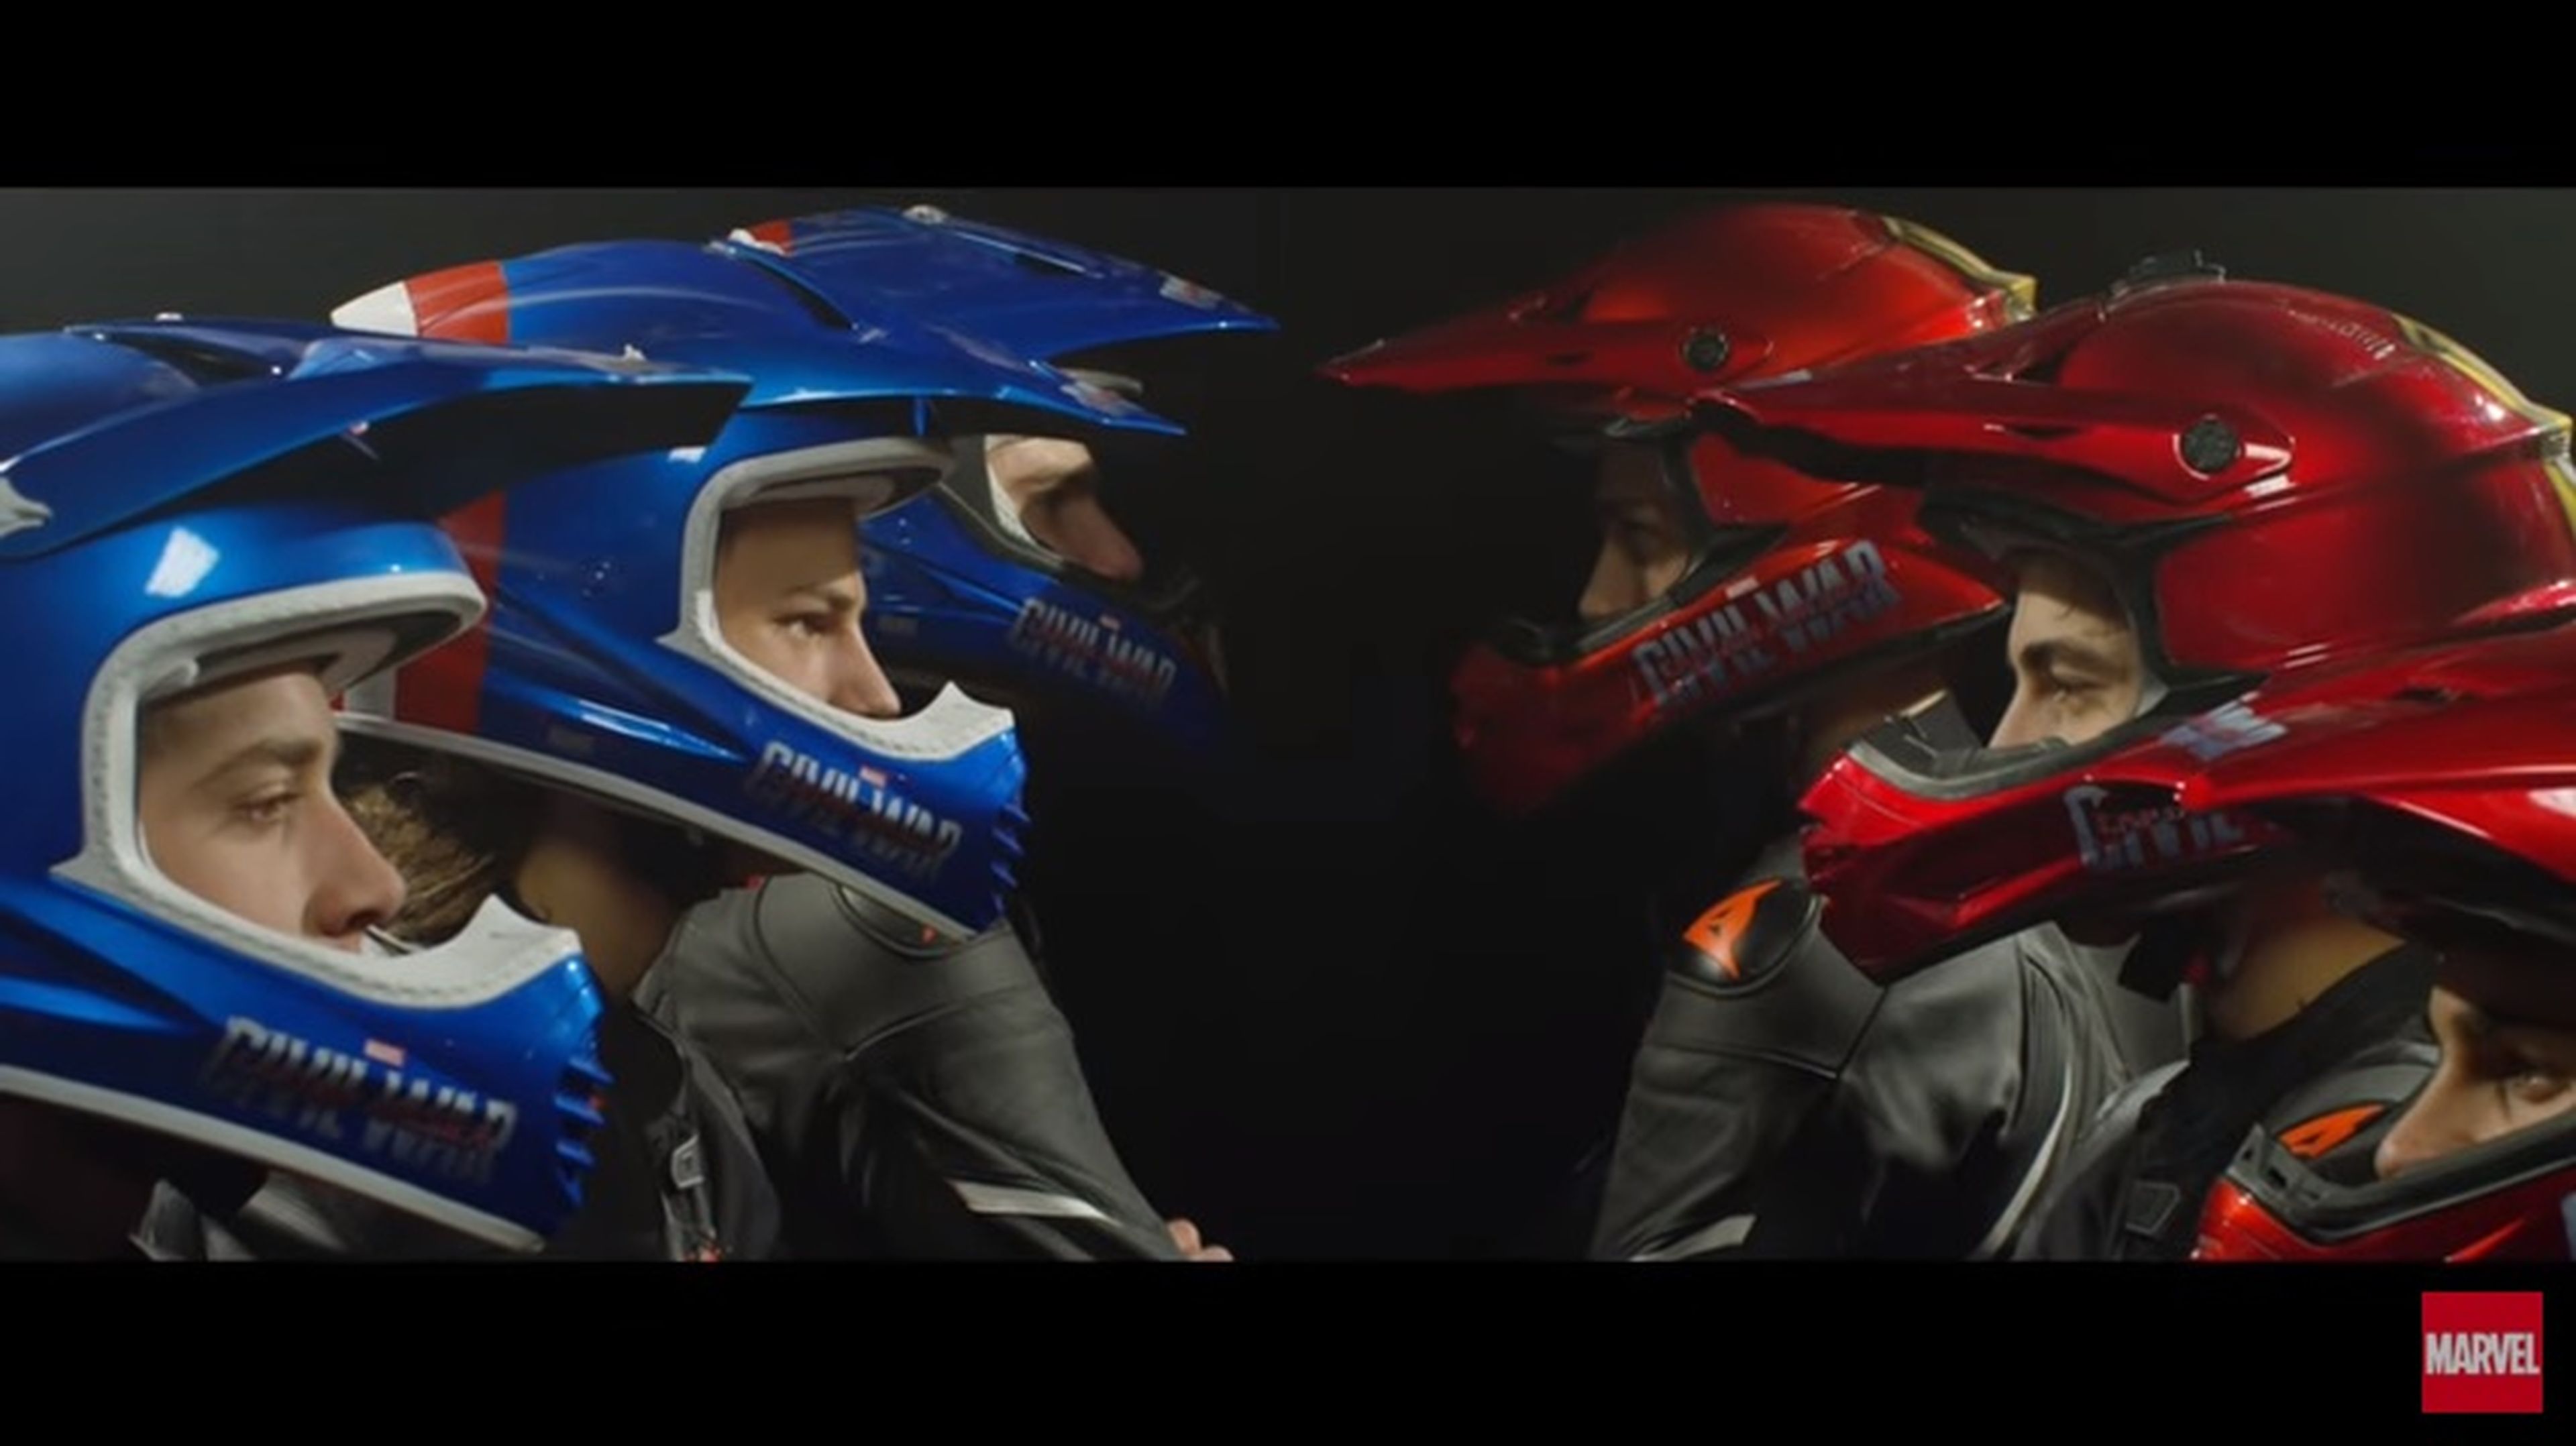 Capitán América vs Iron Man versión VR46 Riders Academy